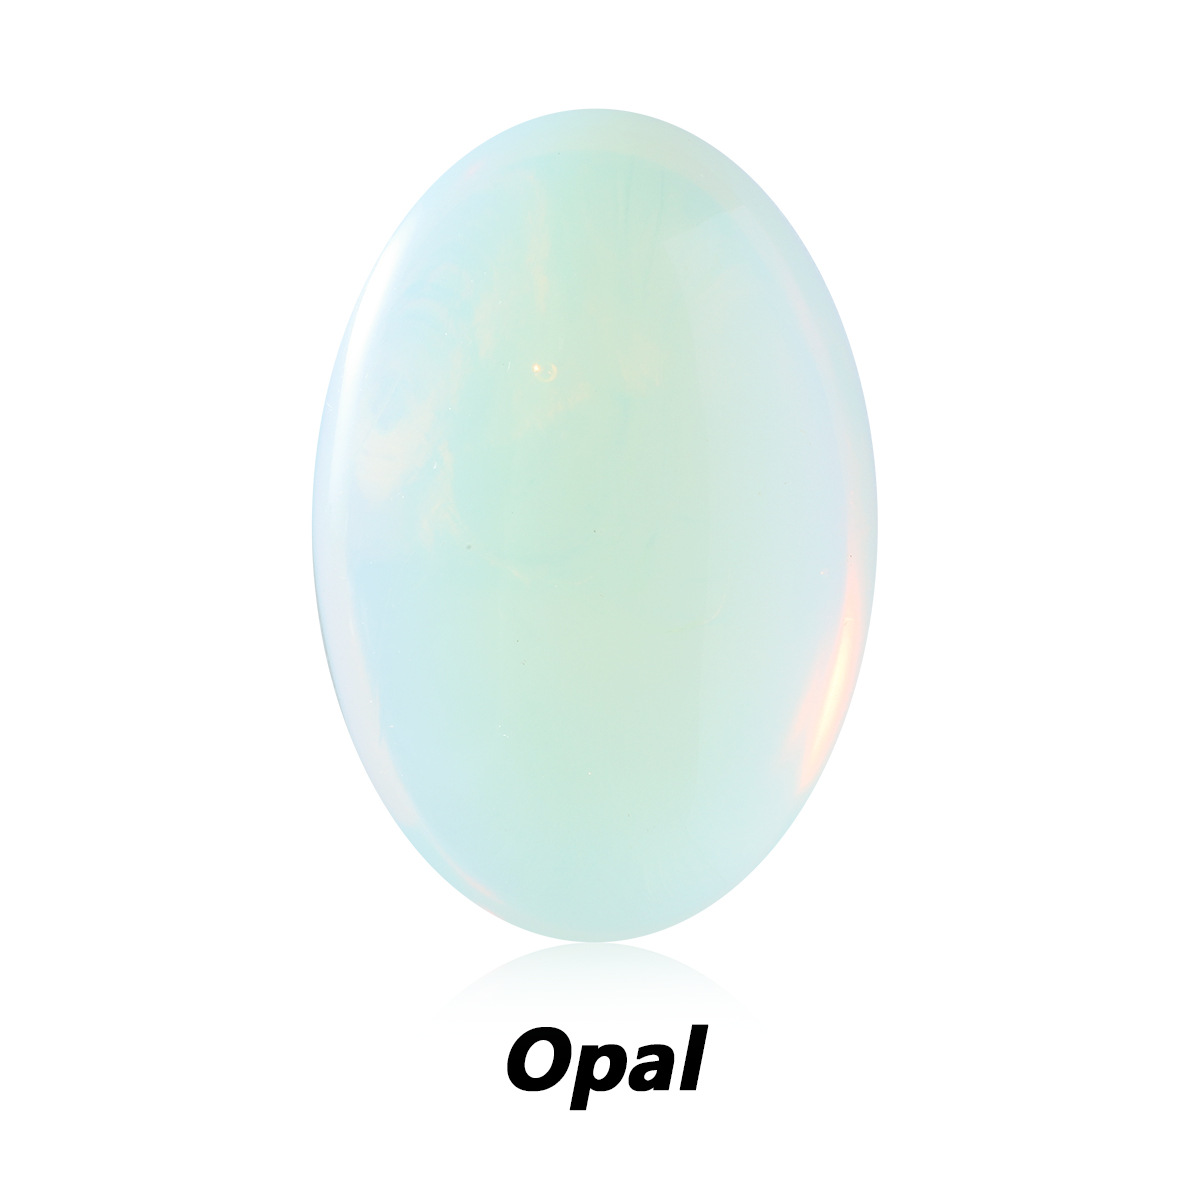 6 mer opale